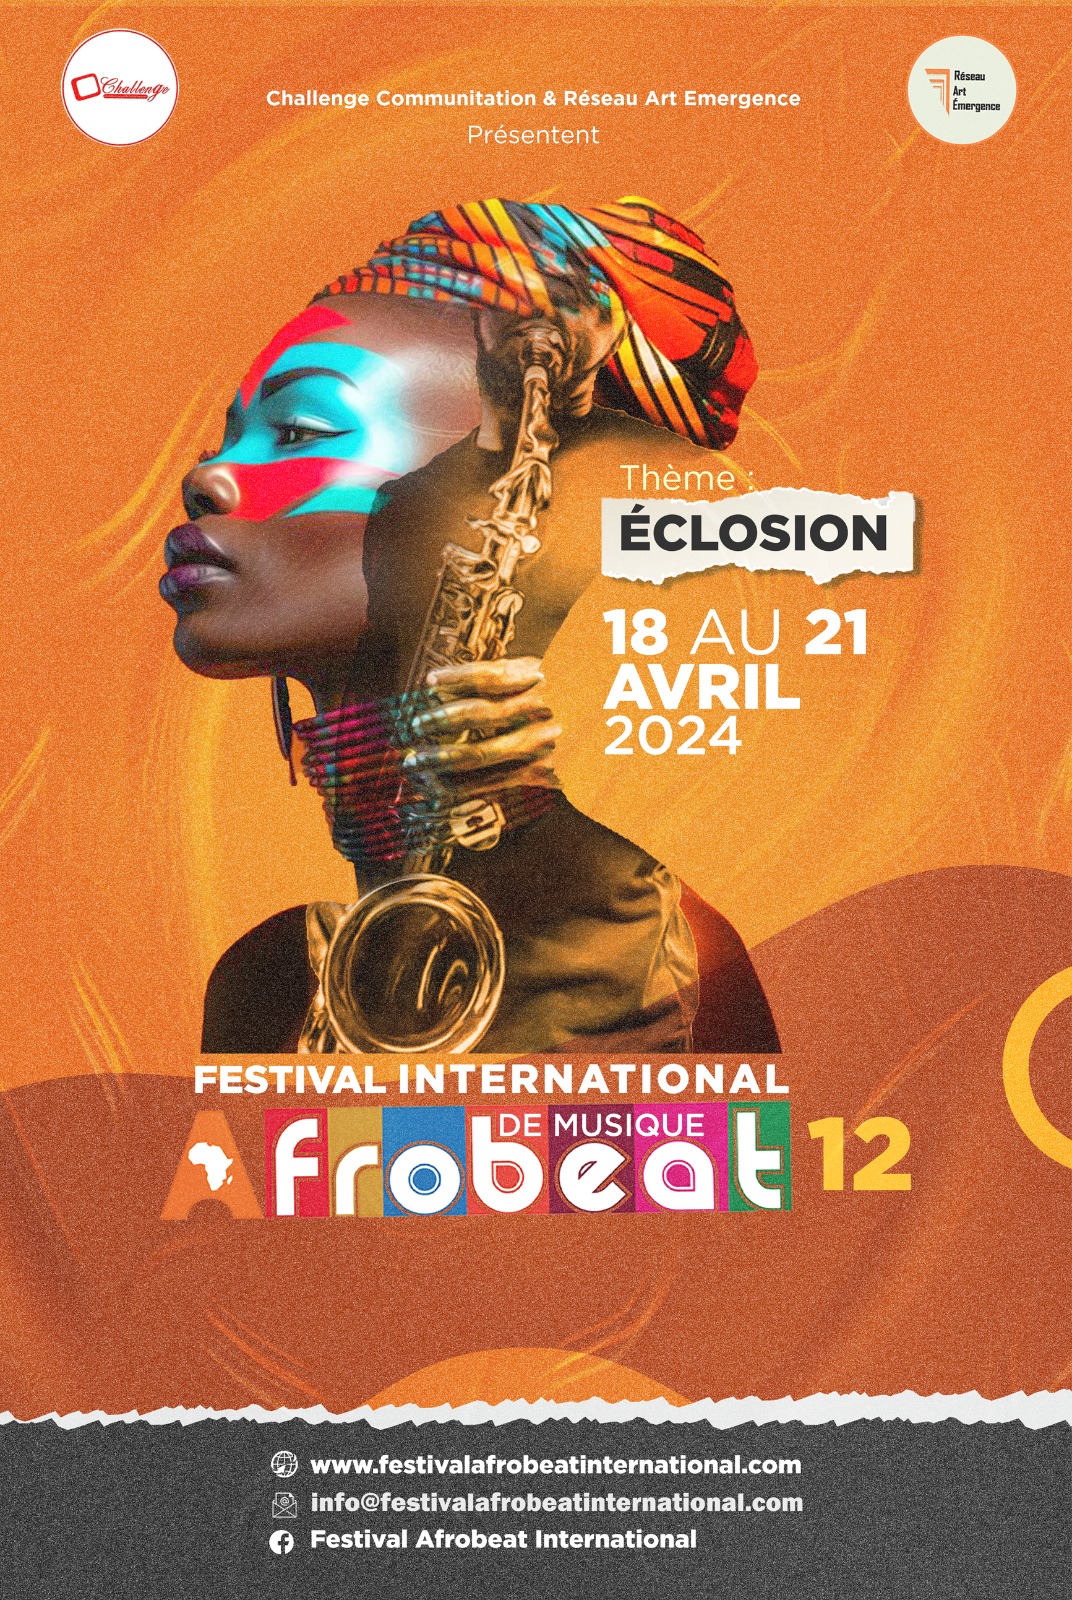 Festival de musique Afrobeat 12 du 18 au 21 avril 2024